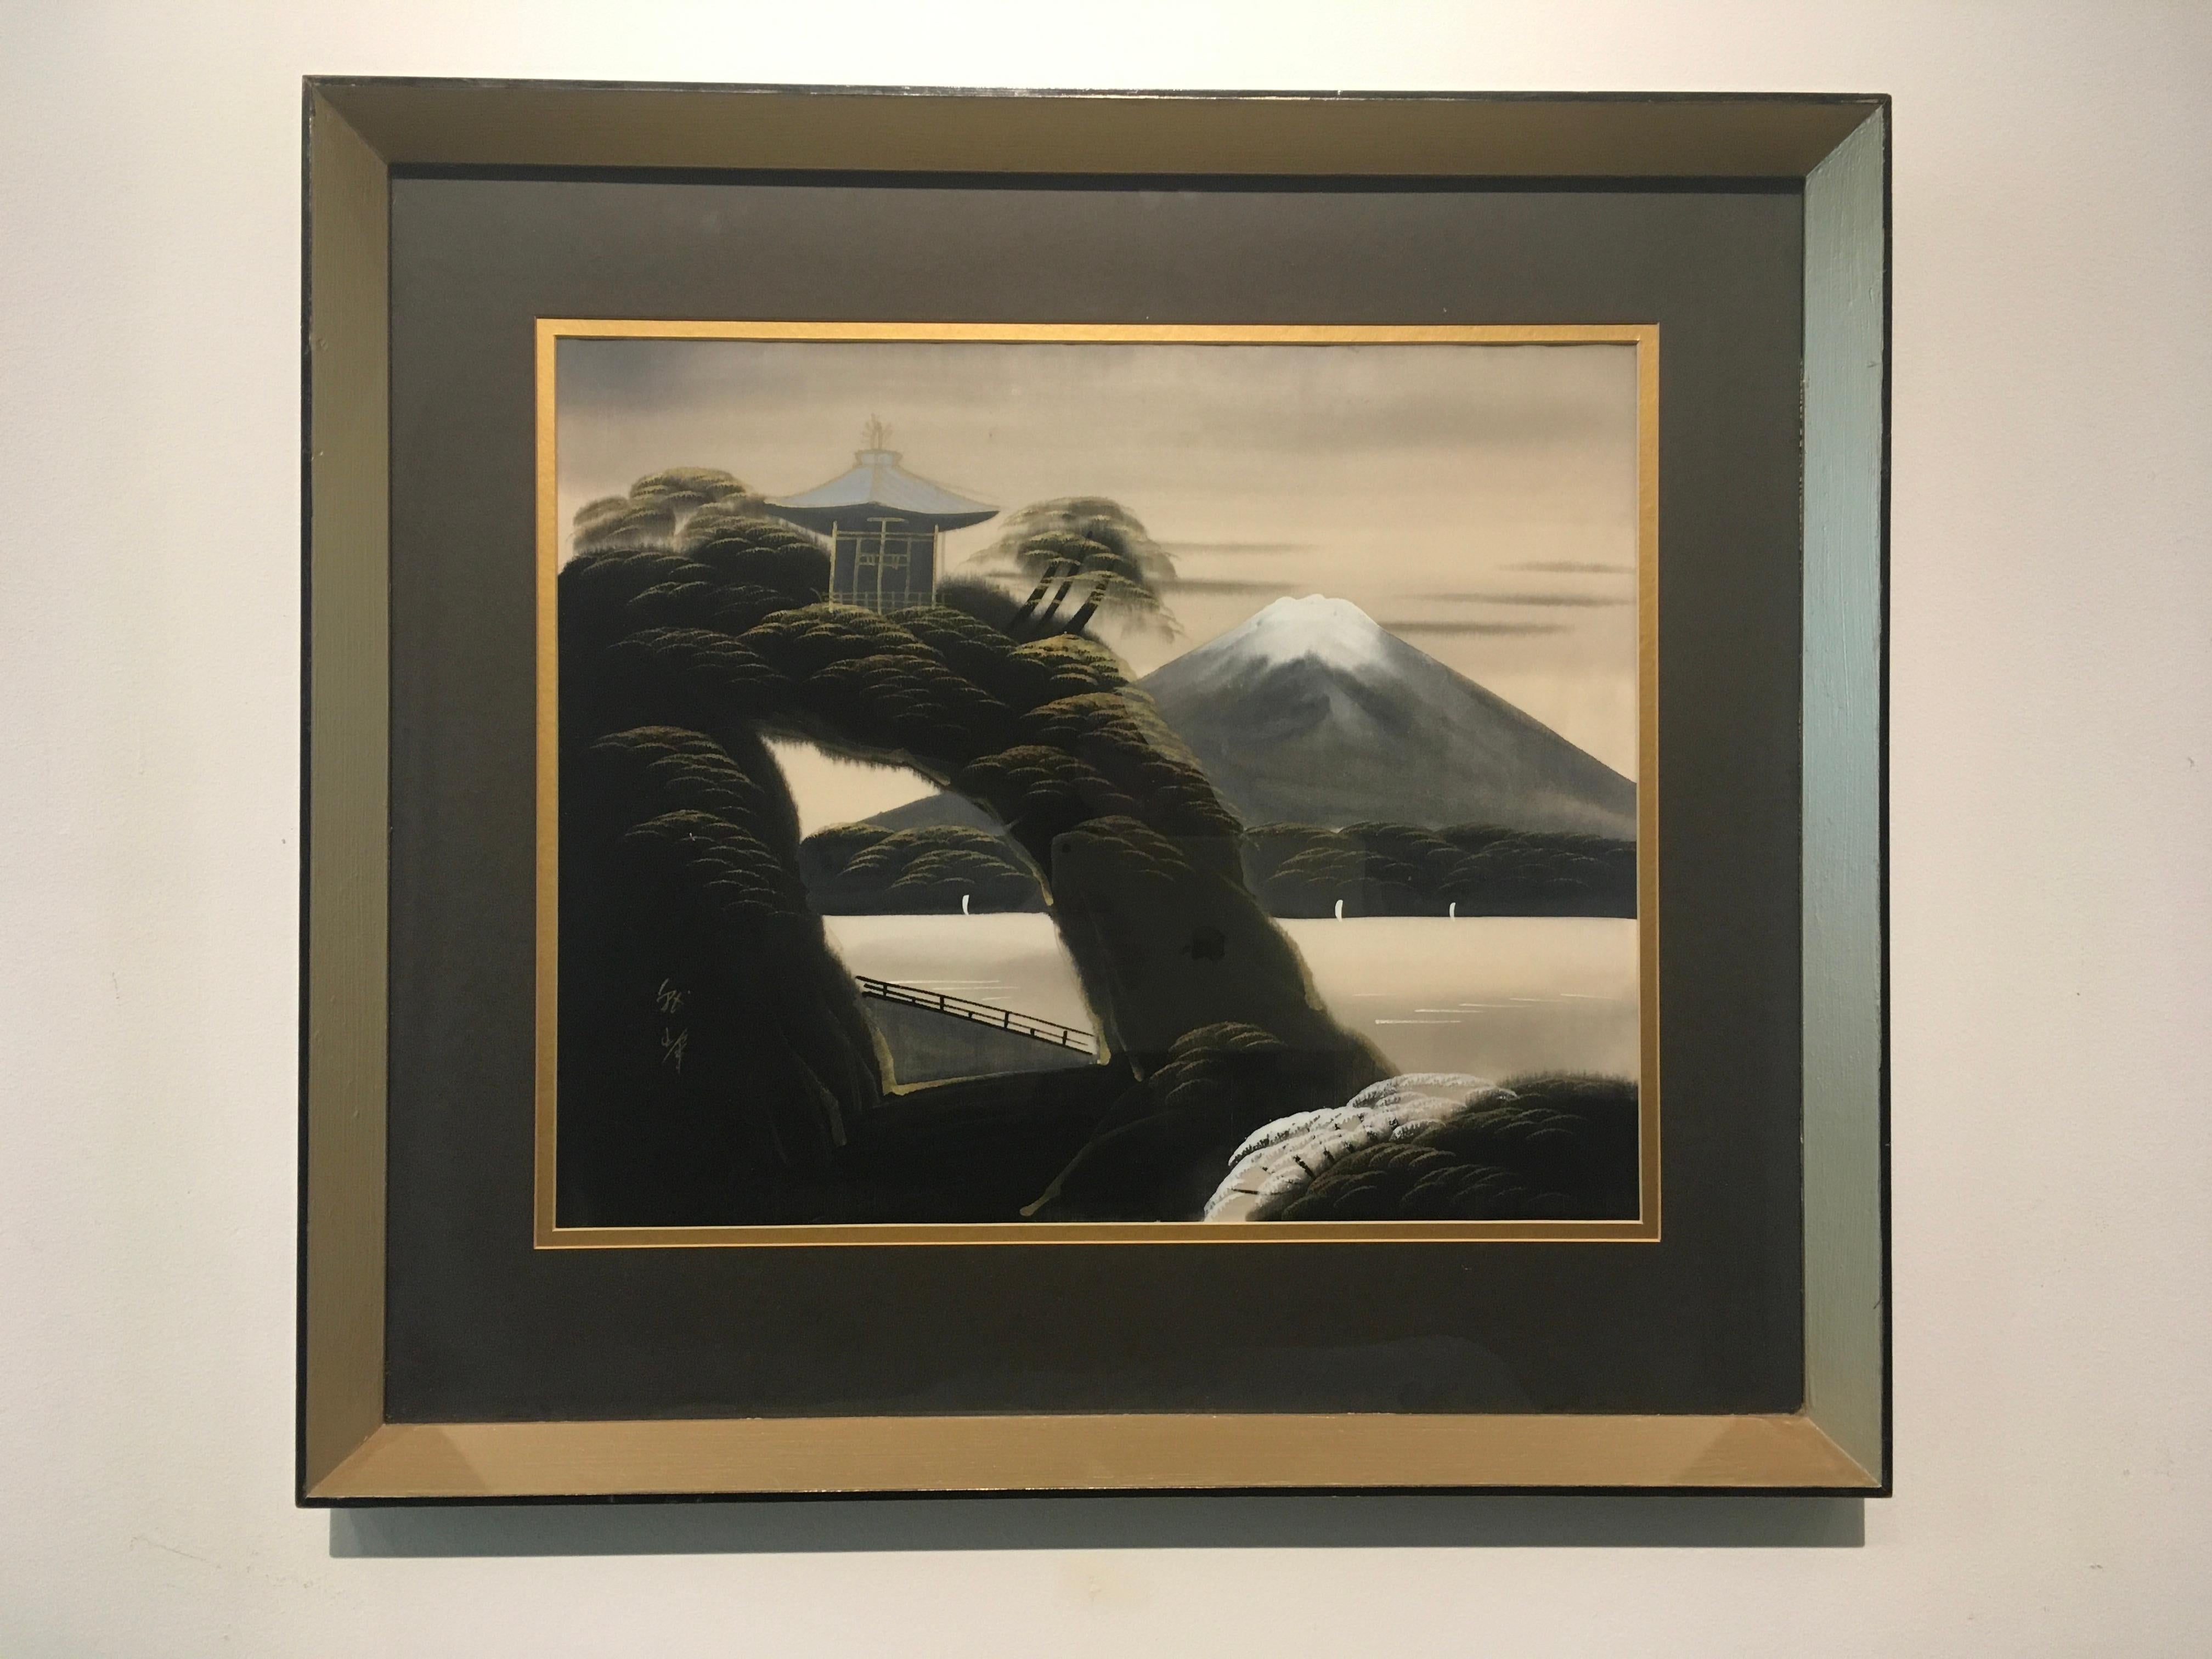 Dieses gerahmte 20" x 22,5" große japanische Aquarell zeigt eine Berg- und Seenlandschaft. Eingebettet in die dichten Bäume steht ein japanisches Haus mit goldenen Akzenten und einem stillen See im Hintergrund. Das Werk ist hinter Glas in einem